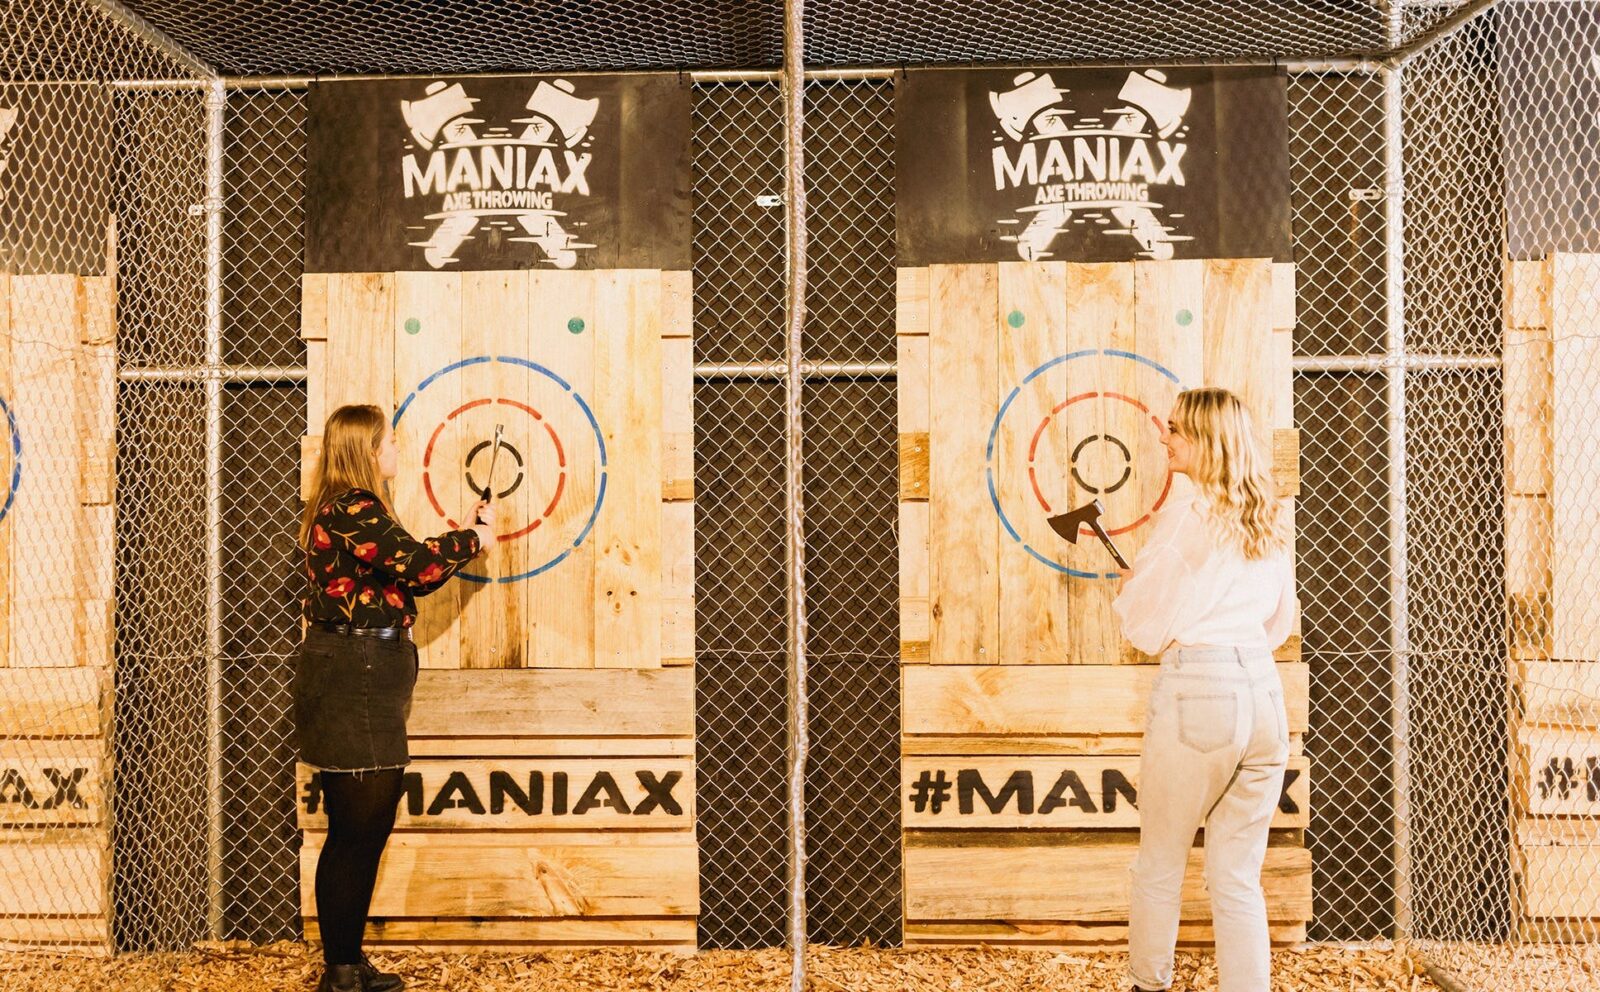 MANIAX Axe Throwing